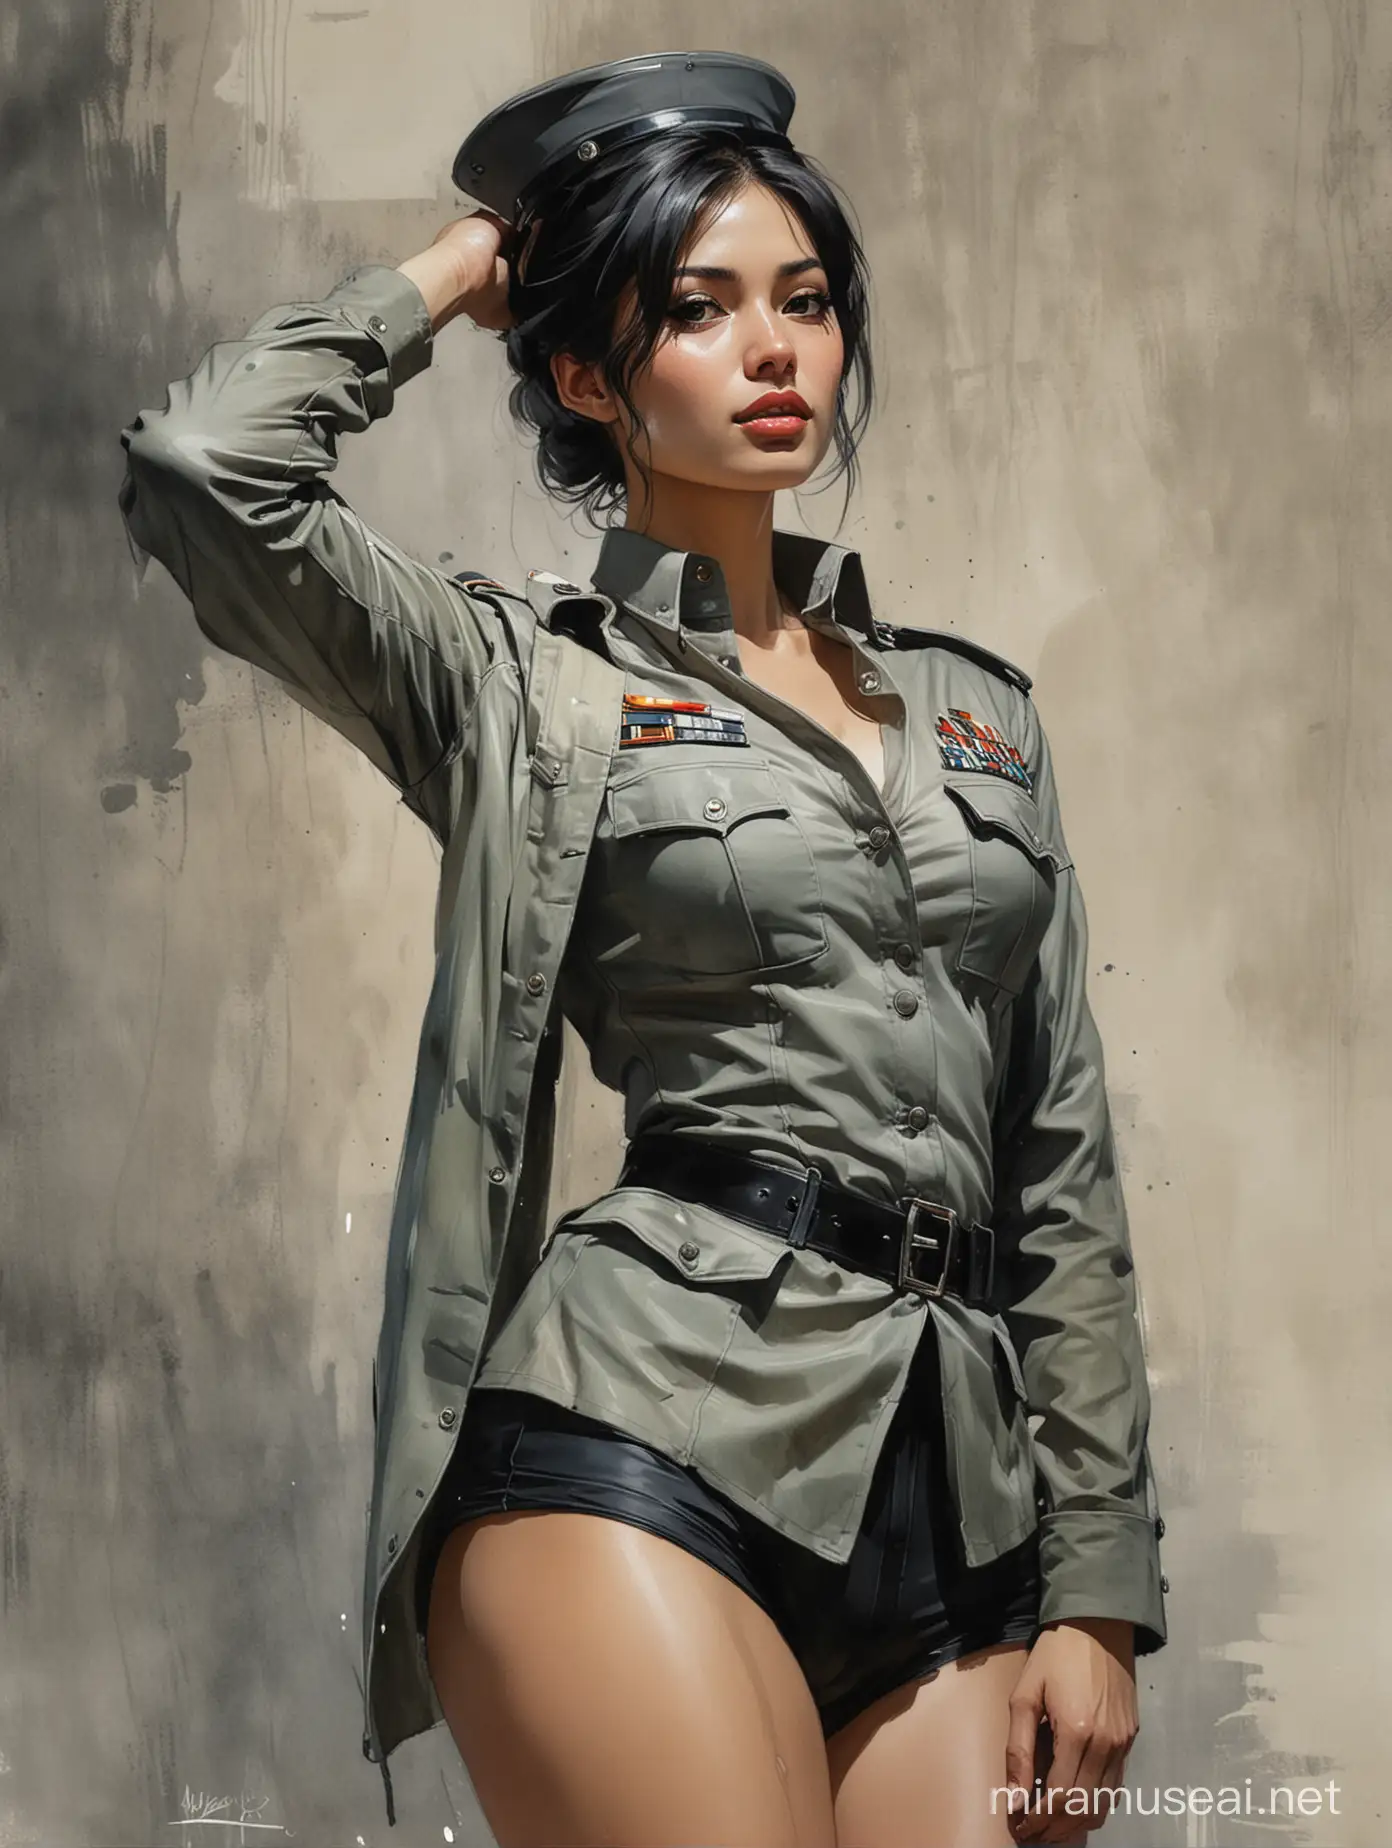 Seductive Jane de Leon in Unbuttoned Soldier Uniform Smirking